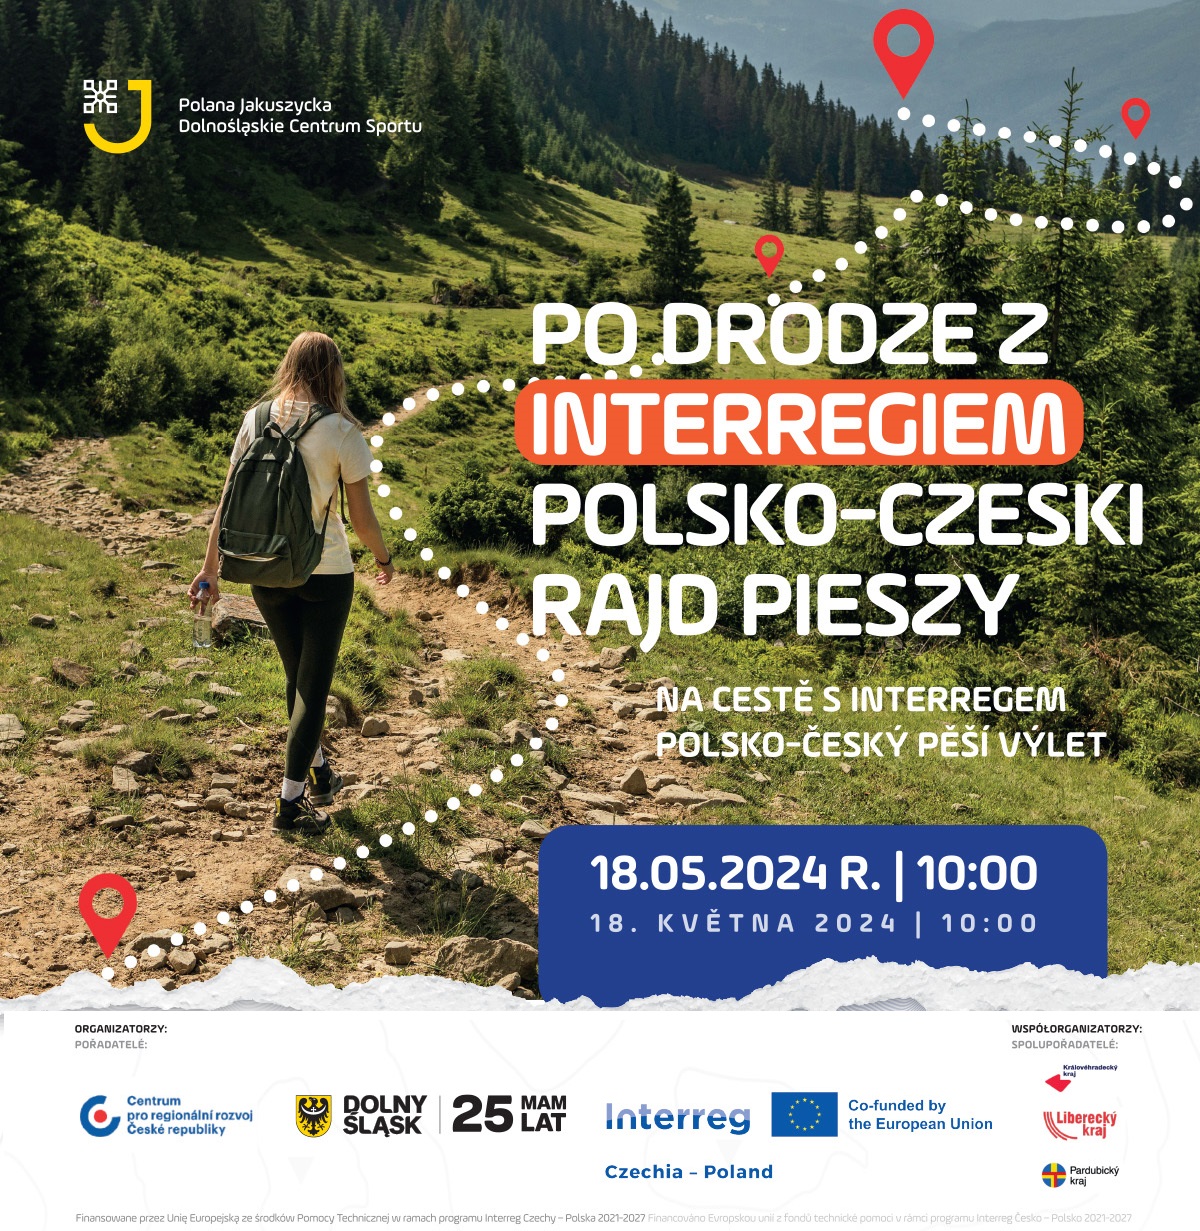 Polsko-Czeski Rajd Pieszy ,,PO DRODZE Z INTERREGIEM“